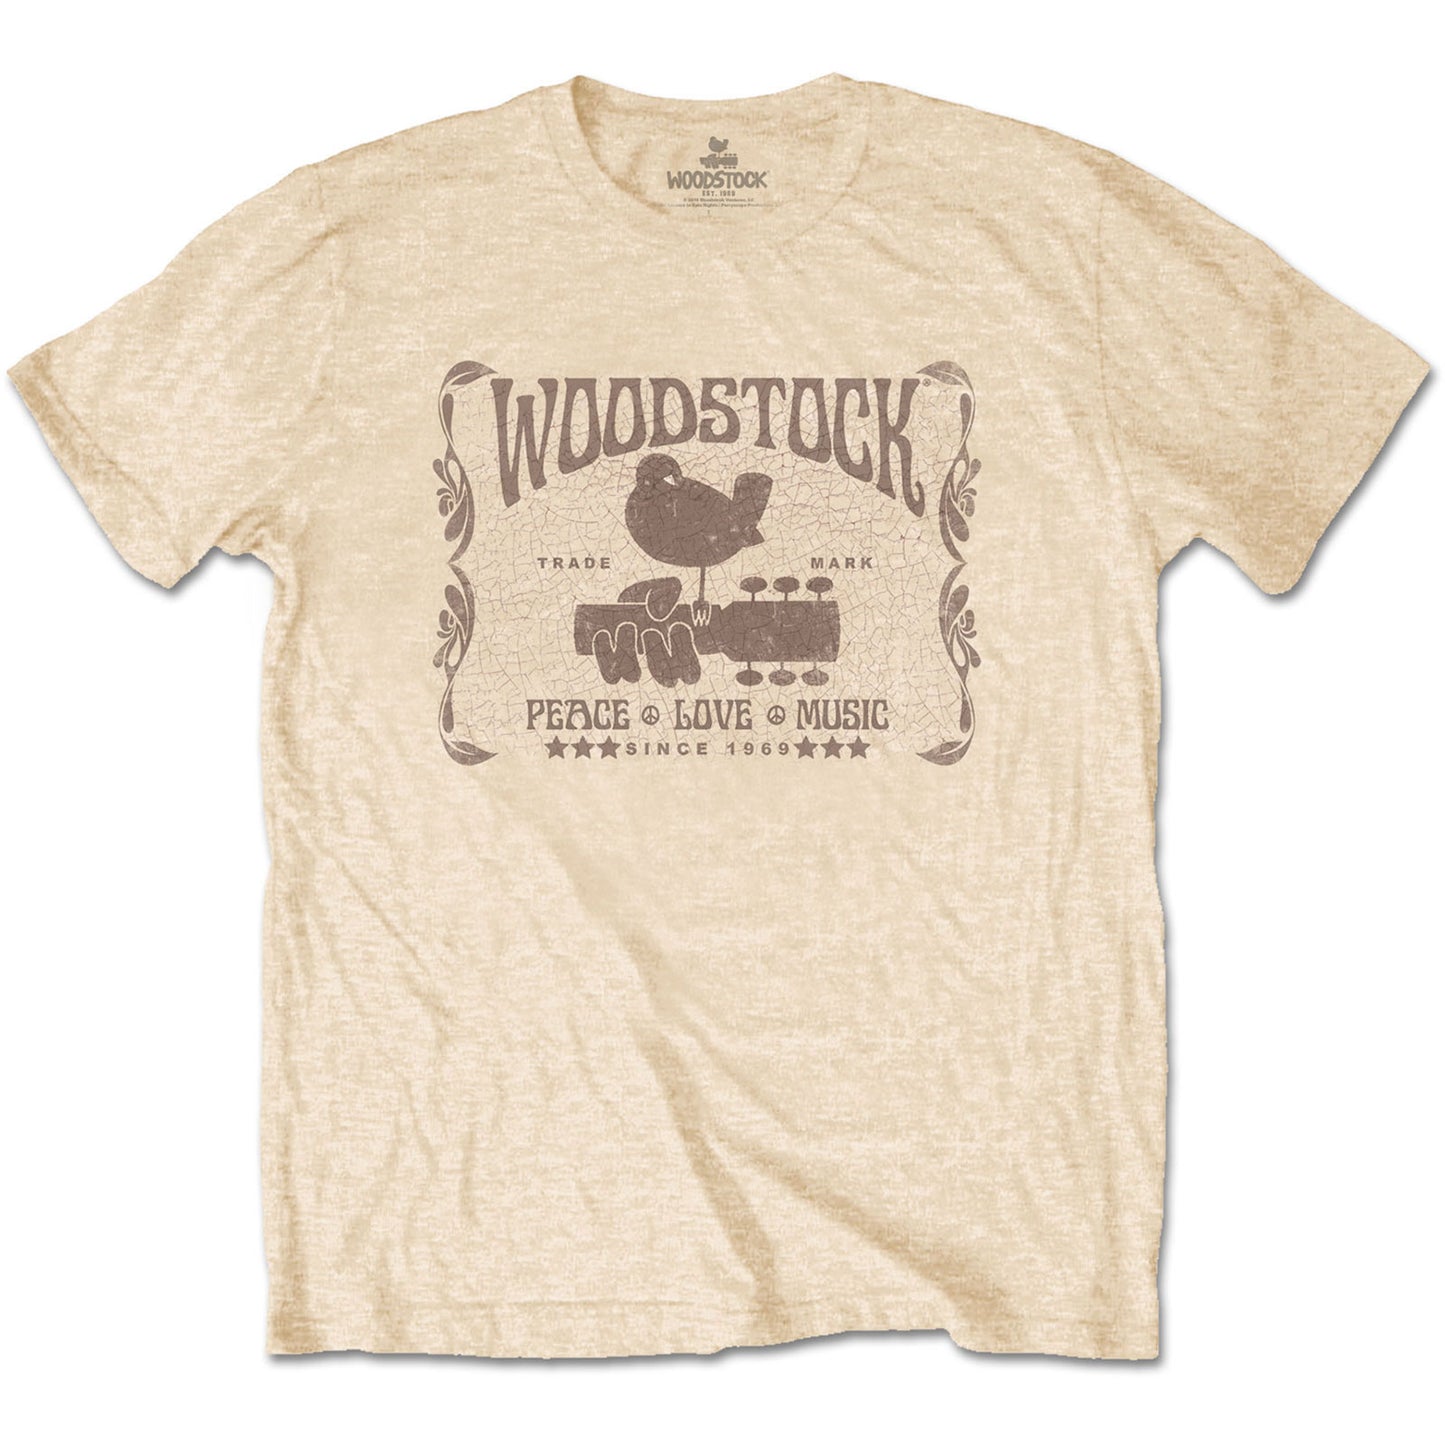 Woodstock T-Shirt: Since 1969